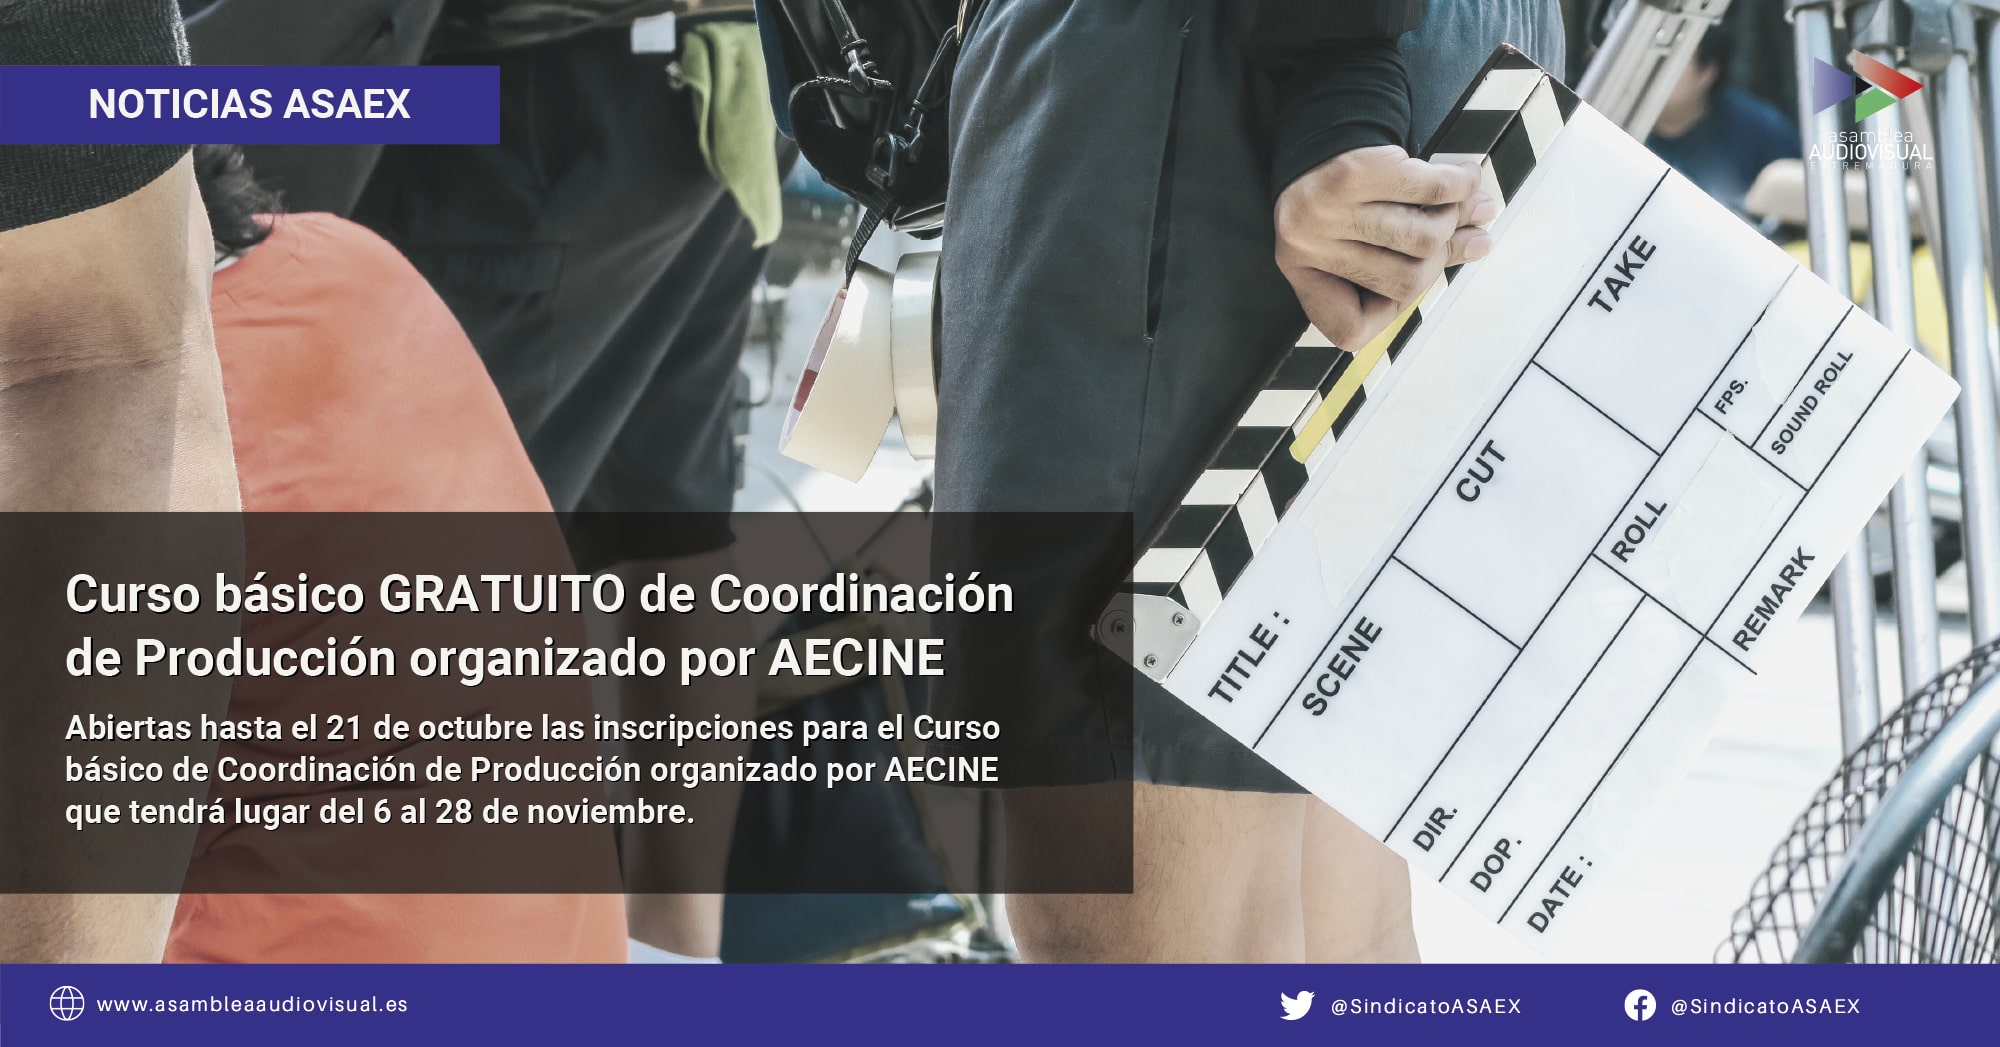 Curso básico de Coordinación de Producción organizado por AECINE